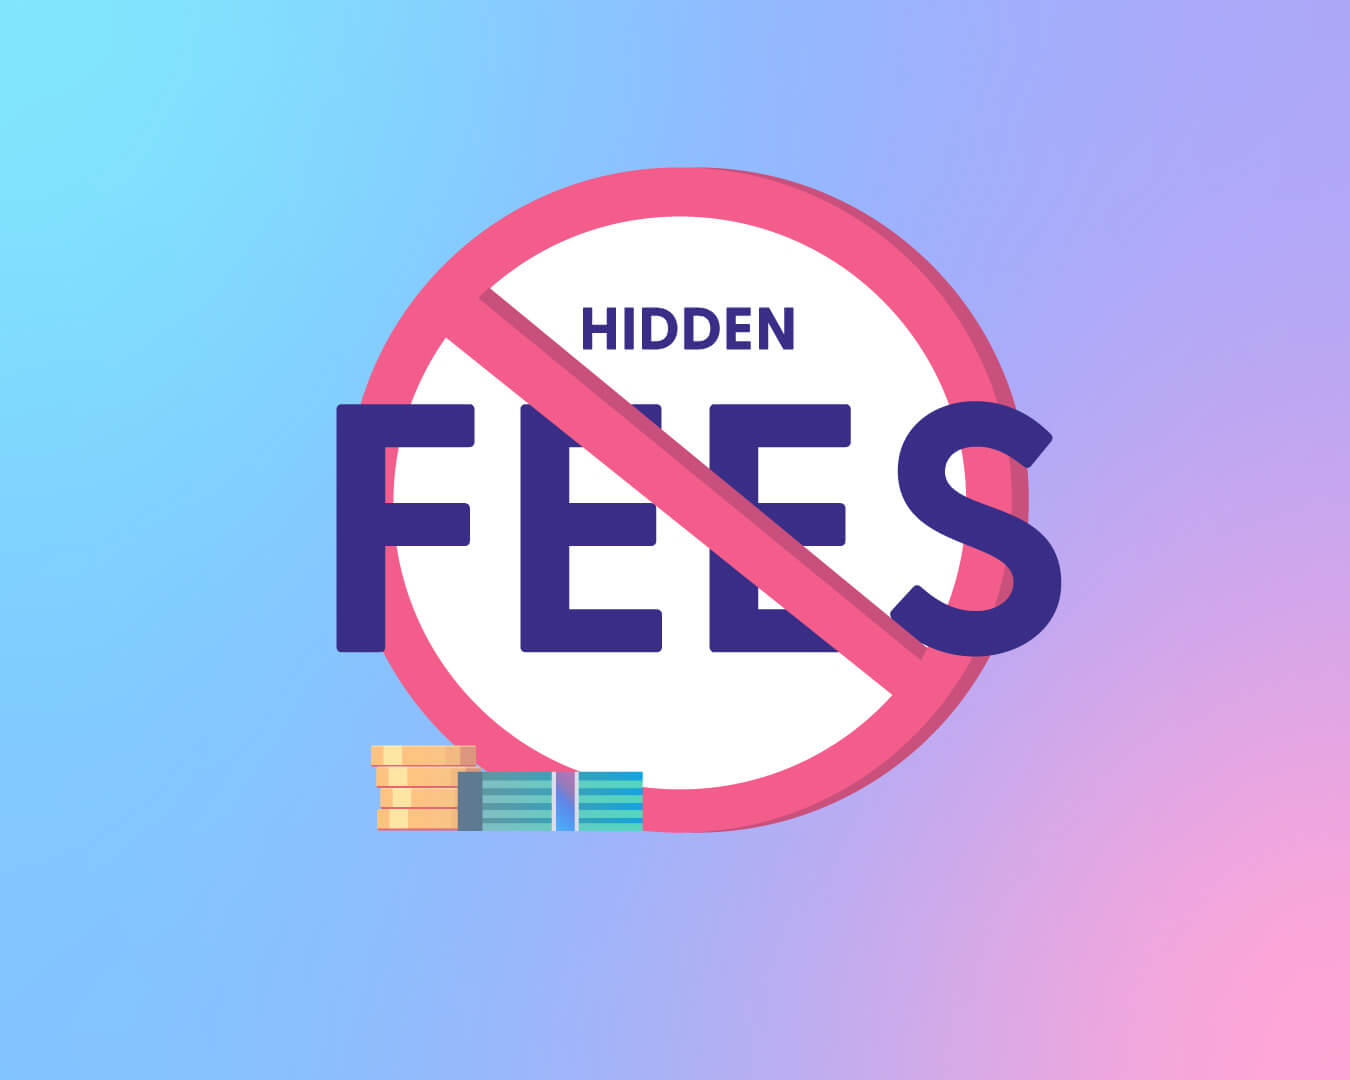 No Hidden Fees Current photo